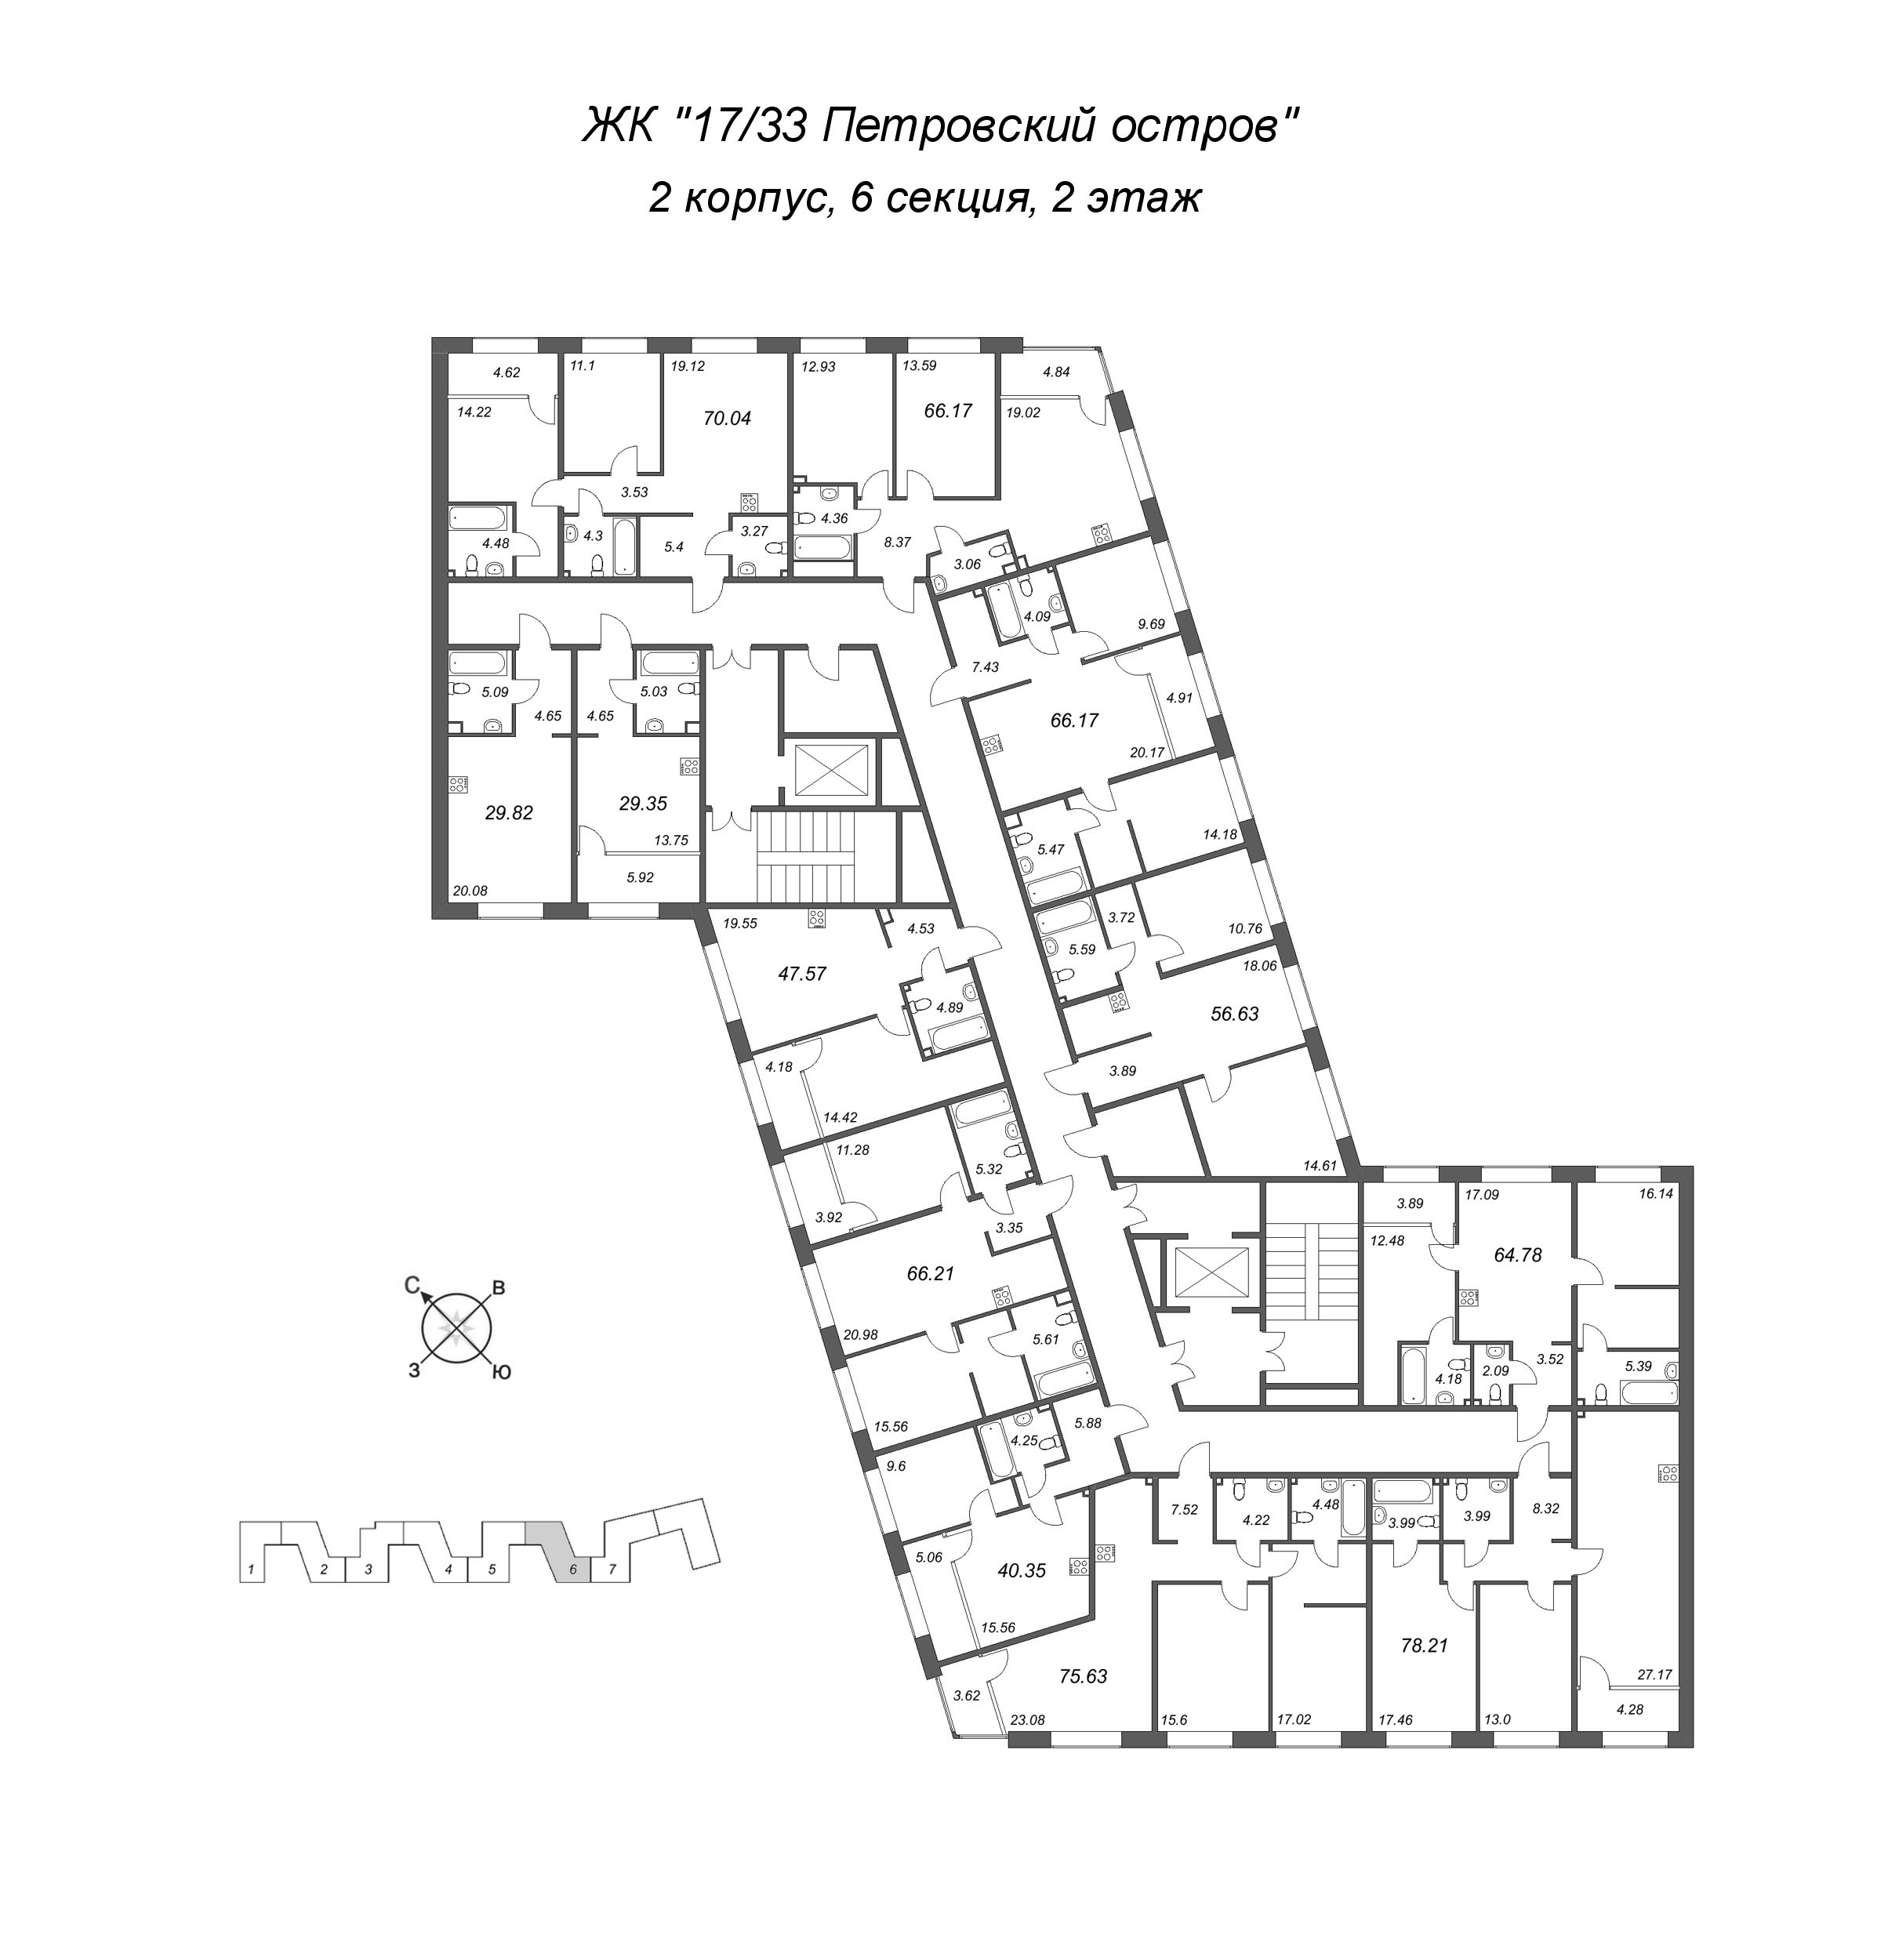 2-комнатная (Евро) квартира, 47.57 м² в ЖК "17/33 Петровский остров" - планировка этажа